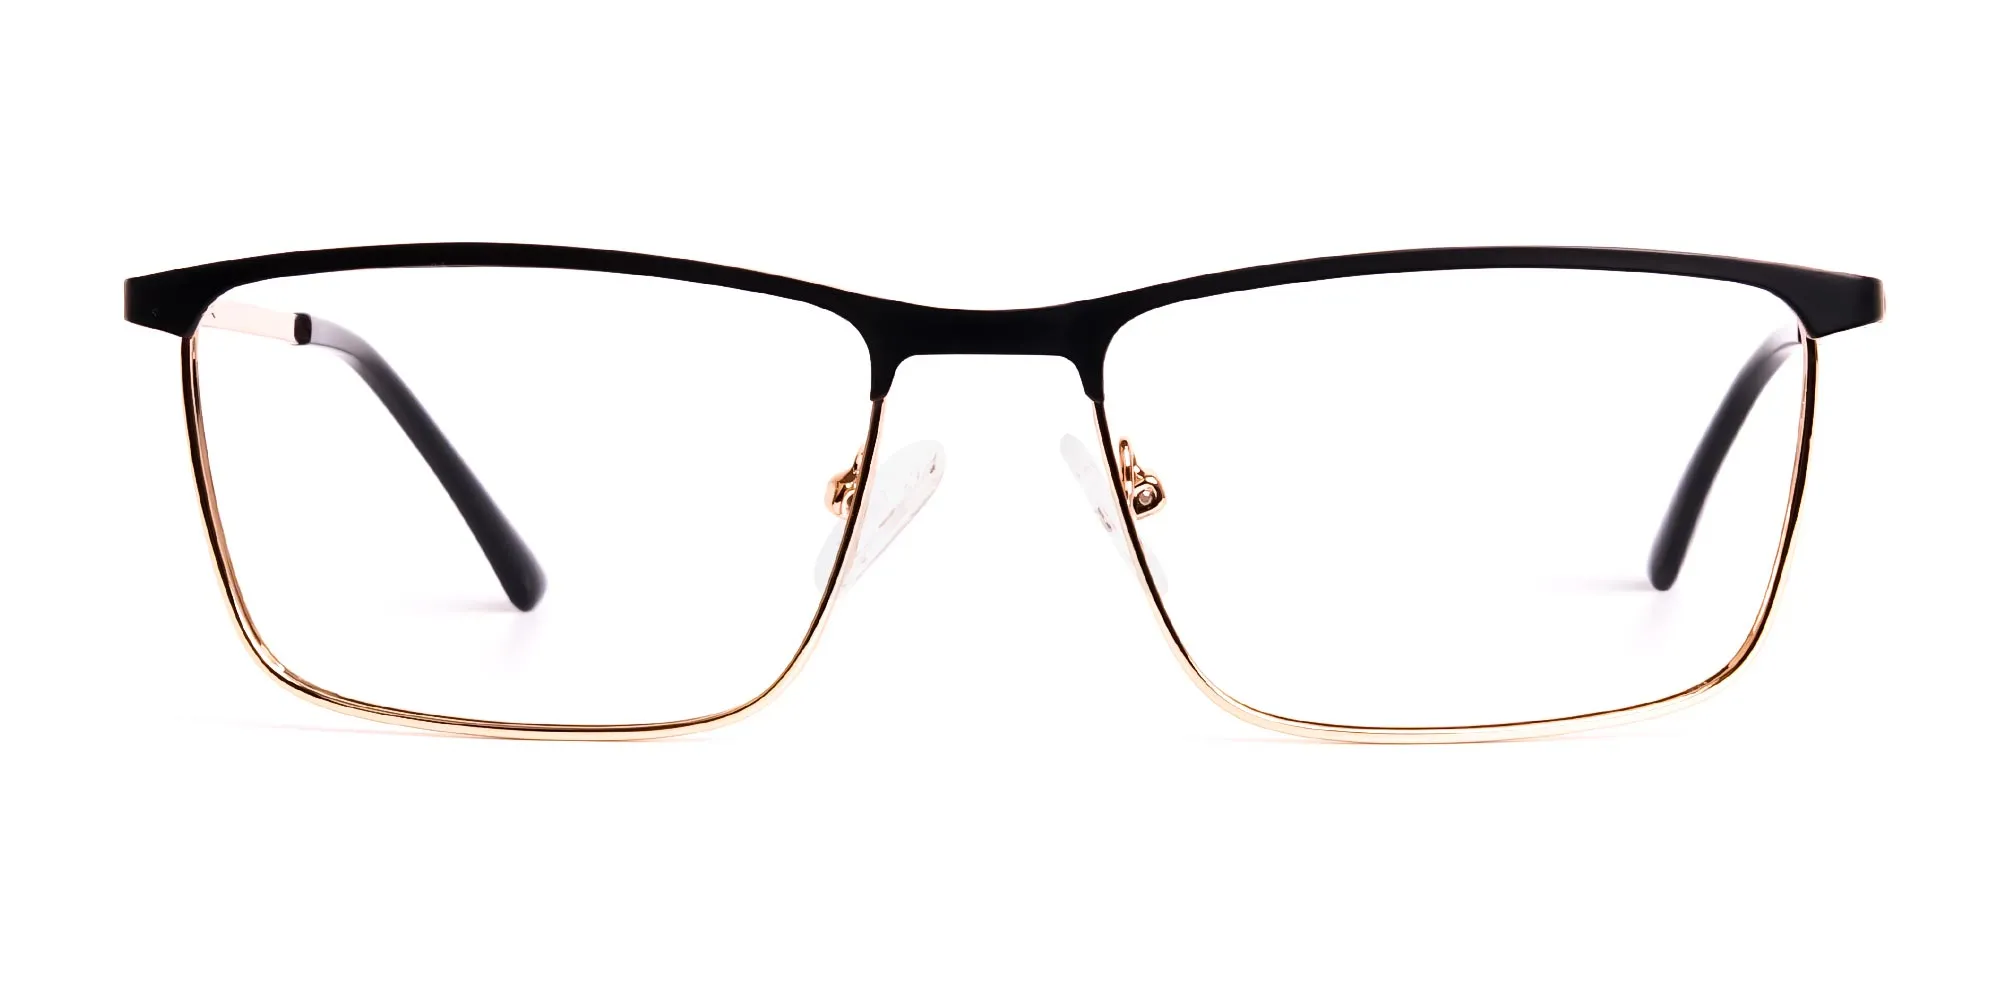 black and gold metal rectangular full rim glasses frames-2